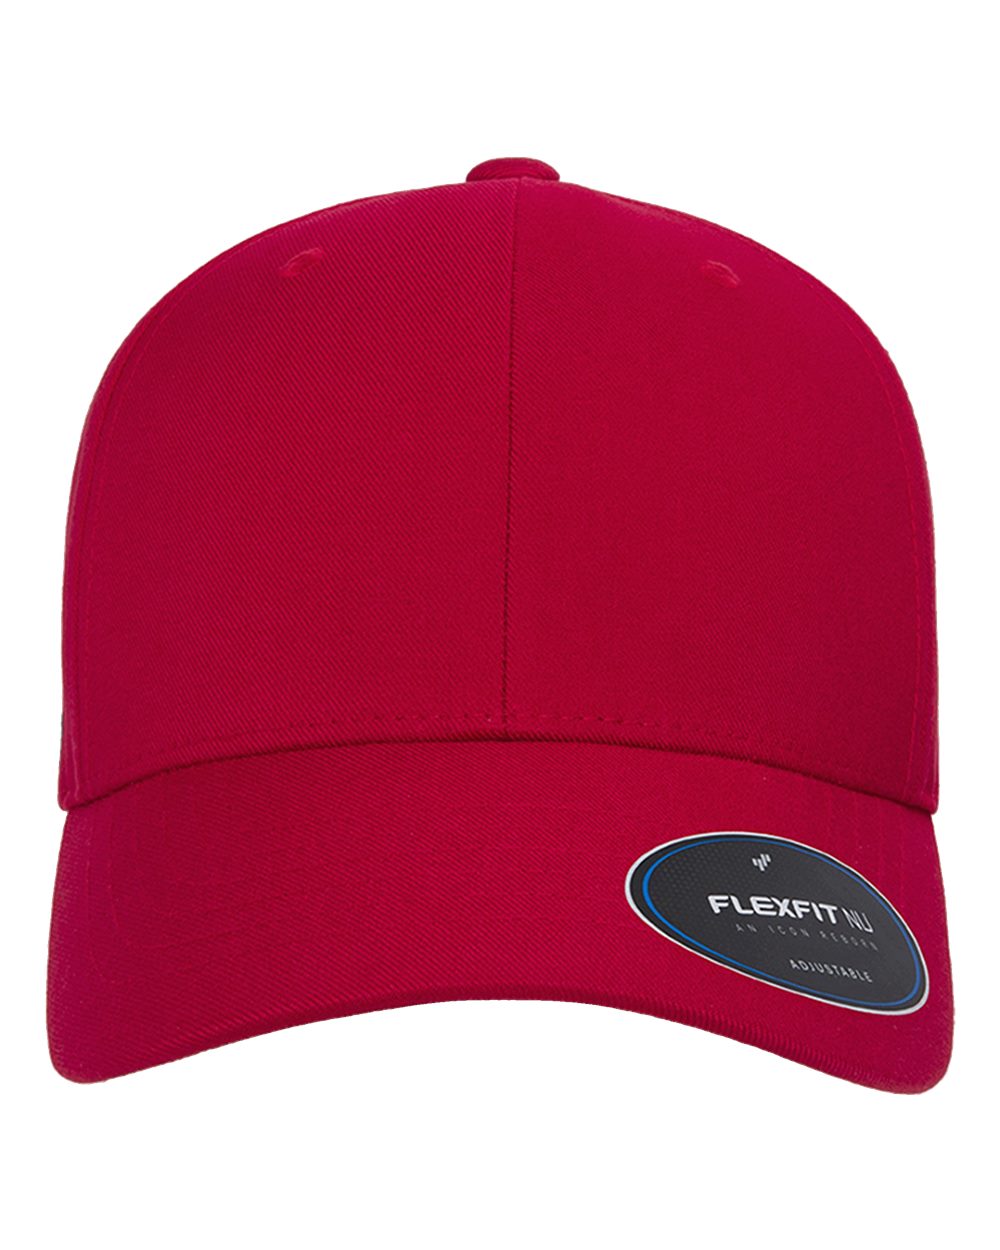 Flexfit - NU® Adjustable Cap - 6110NU